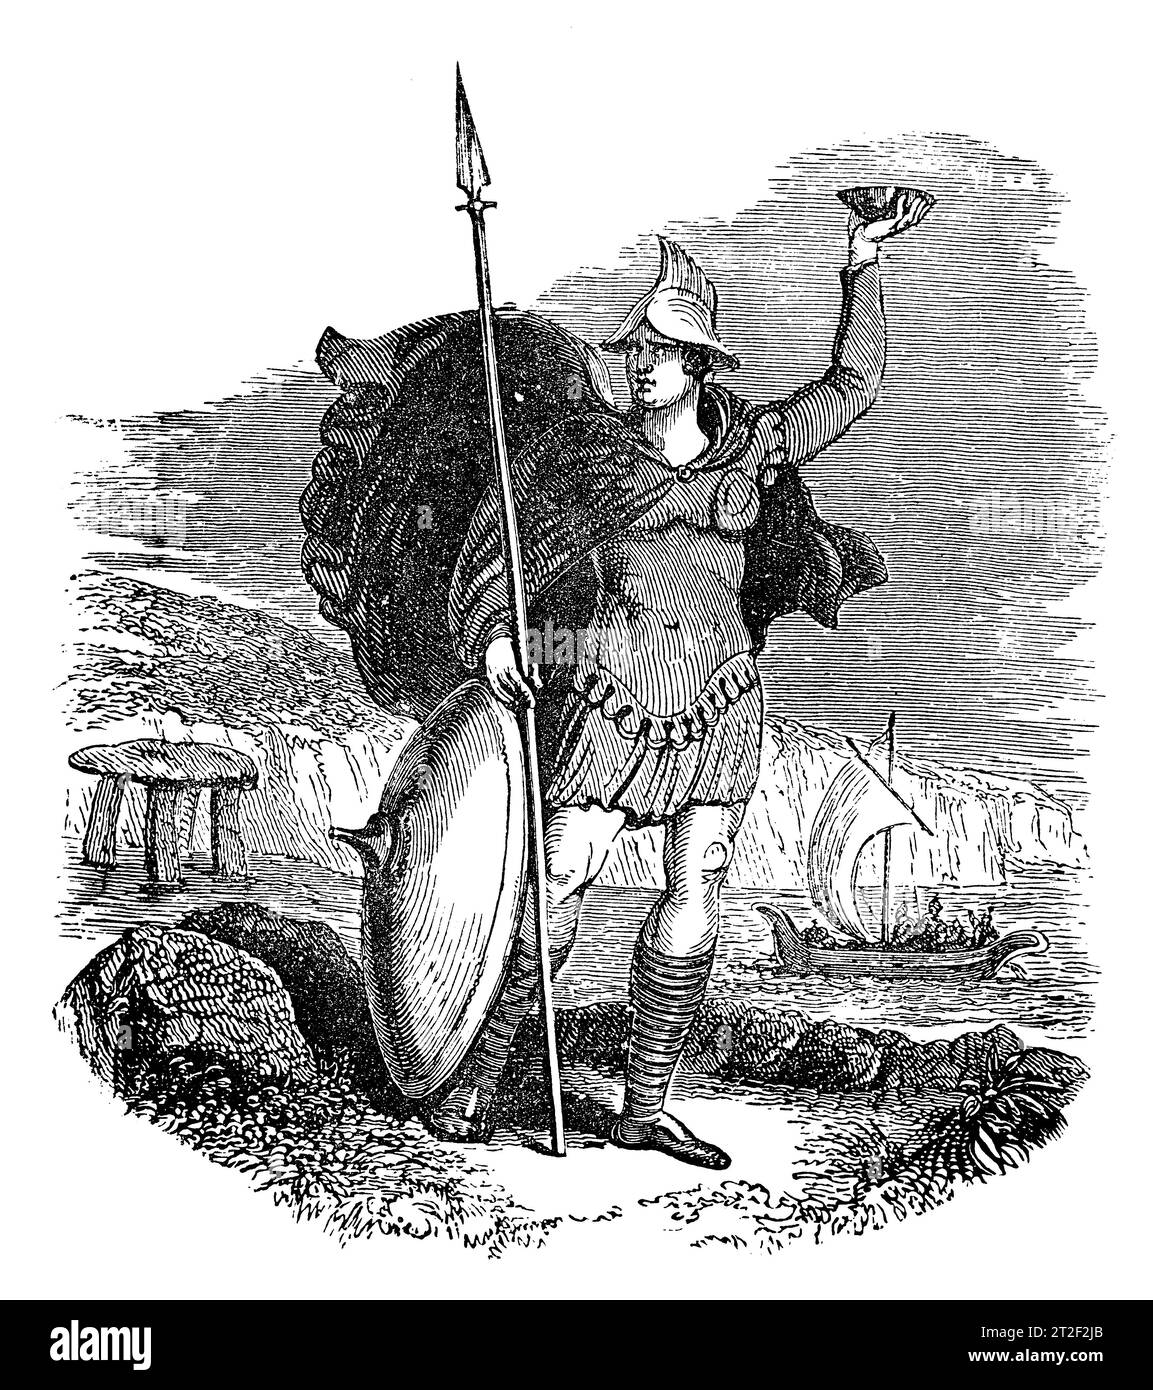 Armas y Cosyume de un jefe militar sajón. Ilustración en blanco y negro de la 'Vieja Inglaterra' publicada por James Sangster en 1860. Foto de stock